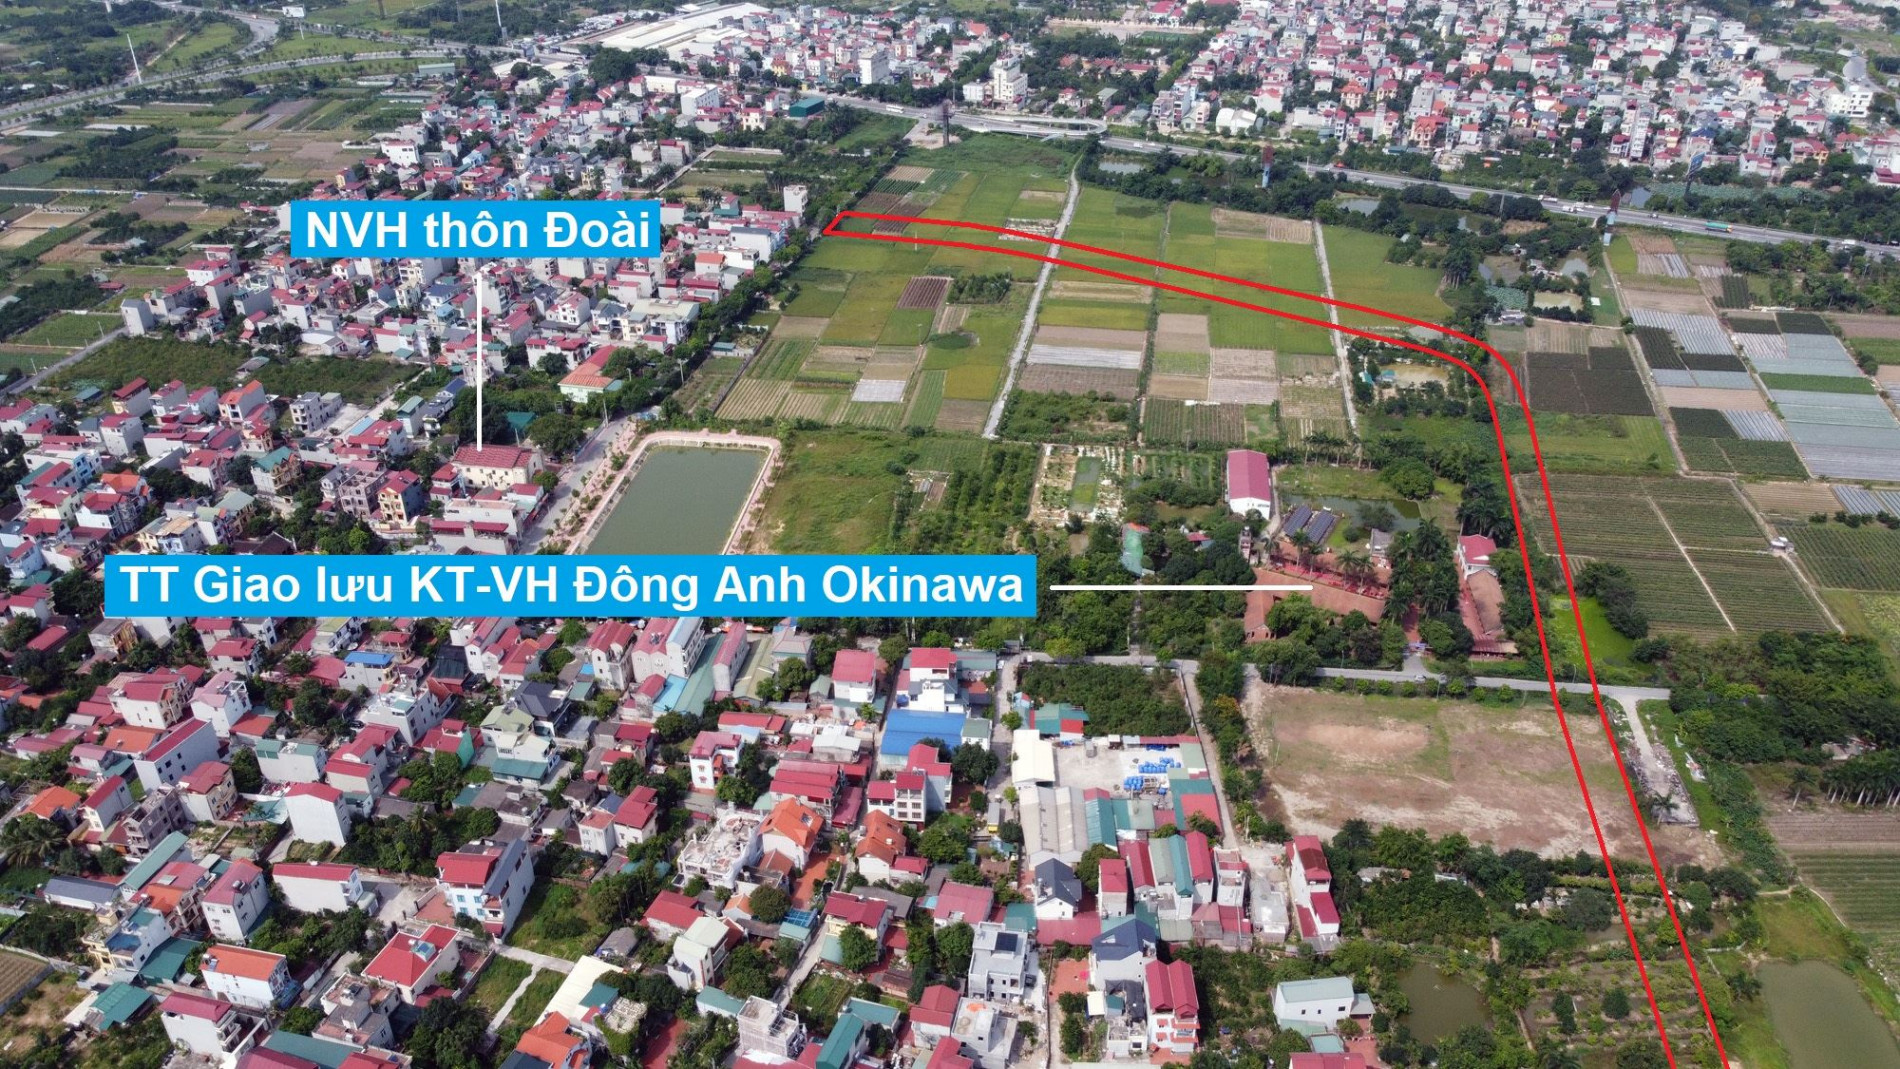 Đường sẽ mở theo quy hoạch ở xã Nam Hồng, Đông Anh, Hà Nội (phần 5)